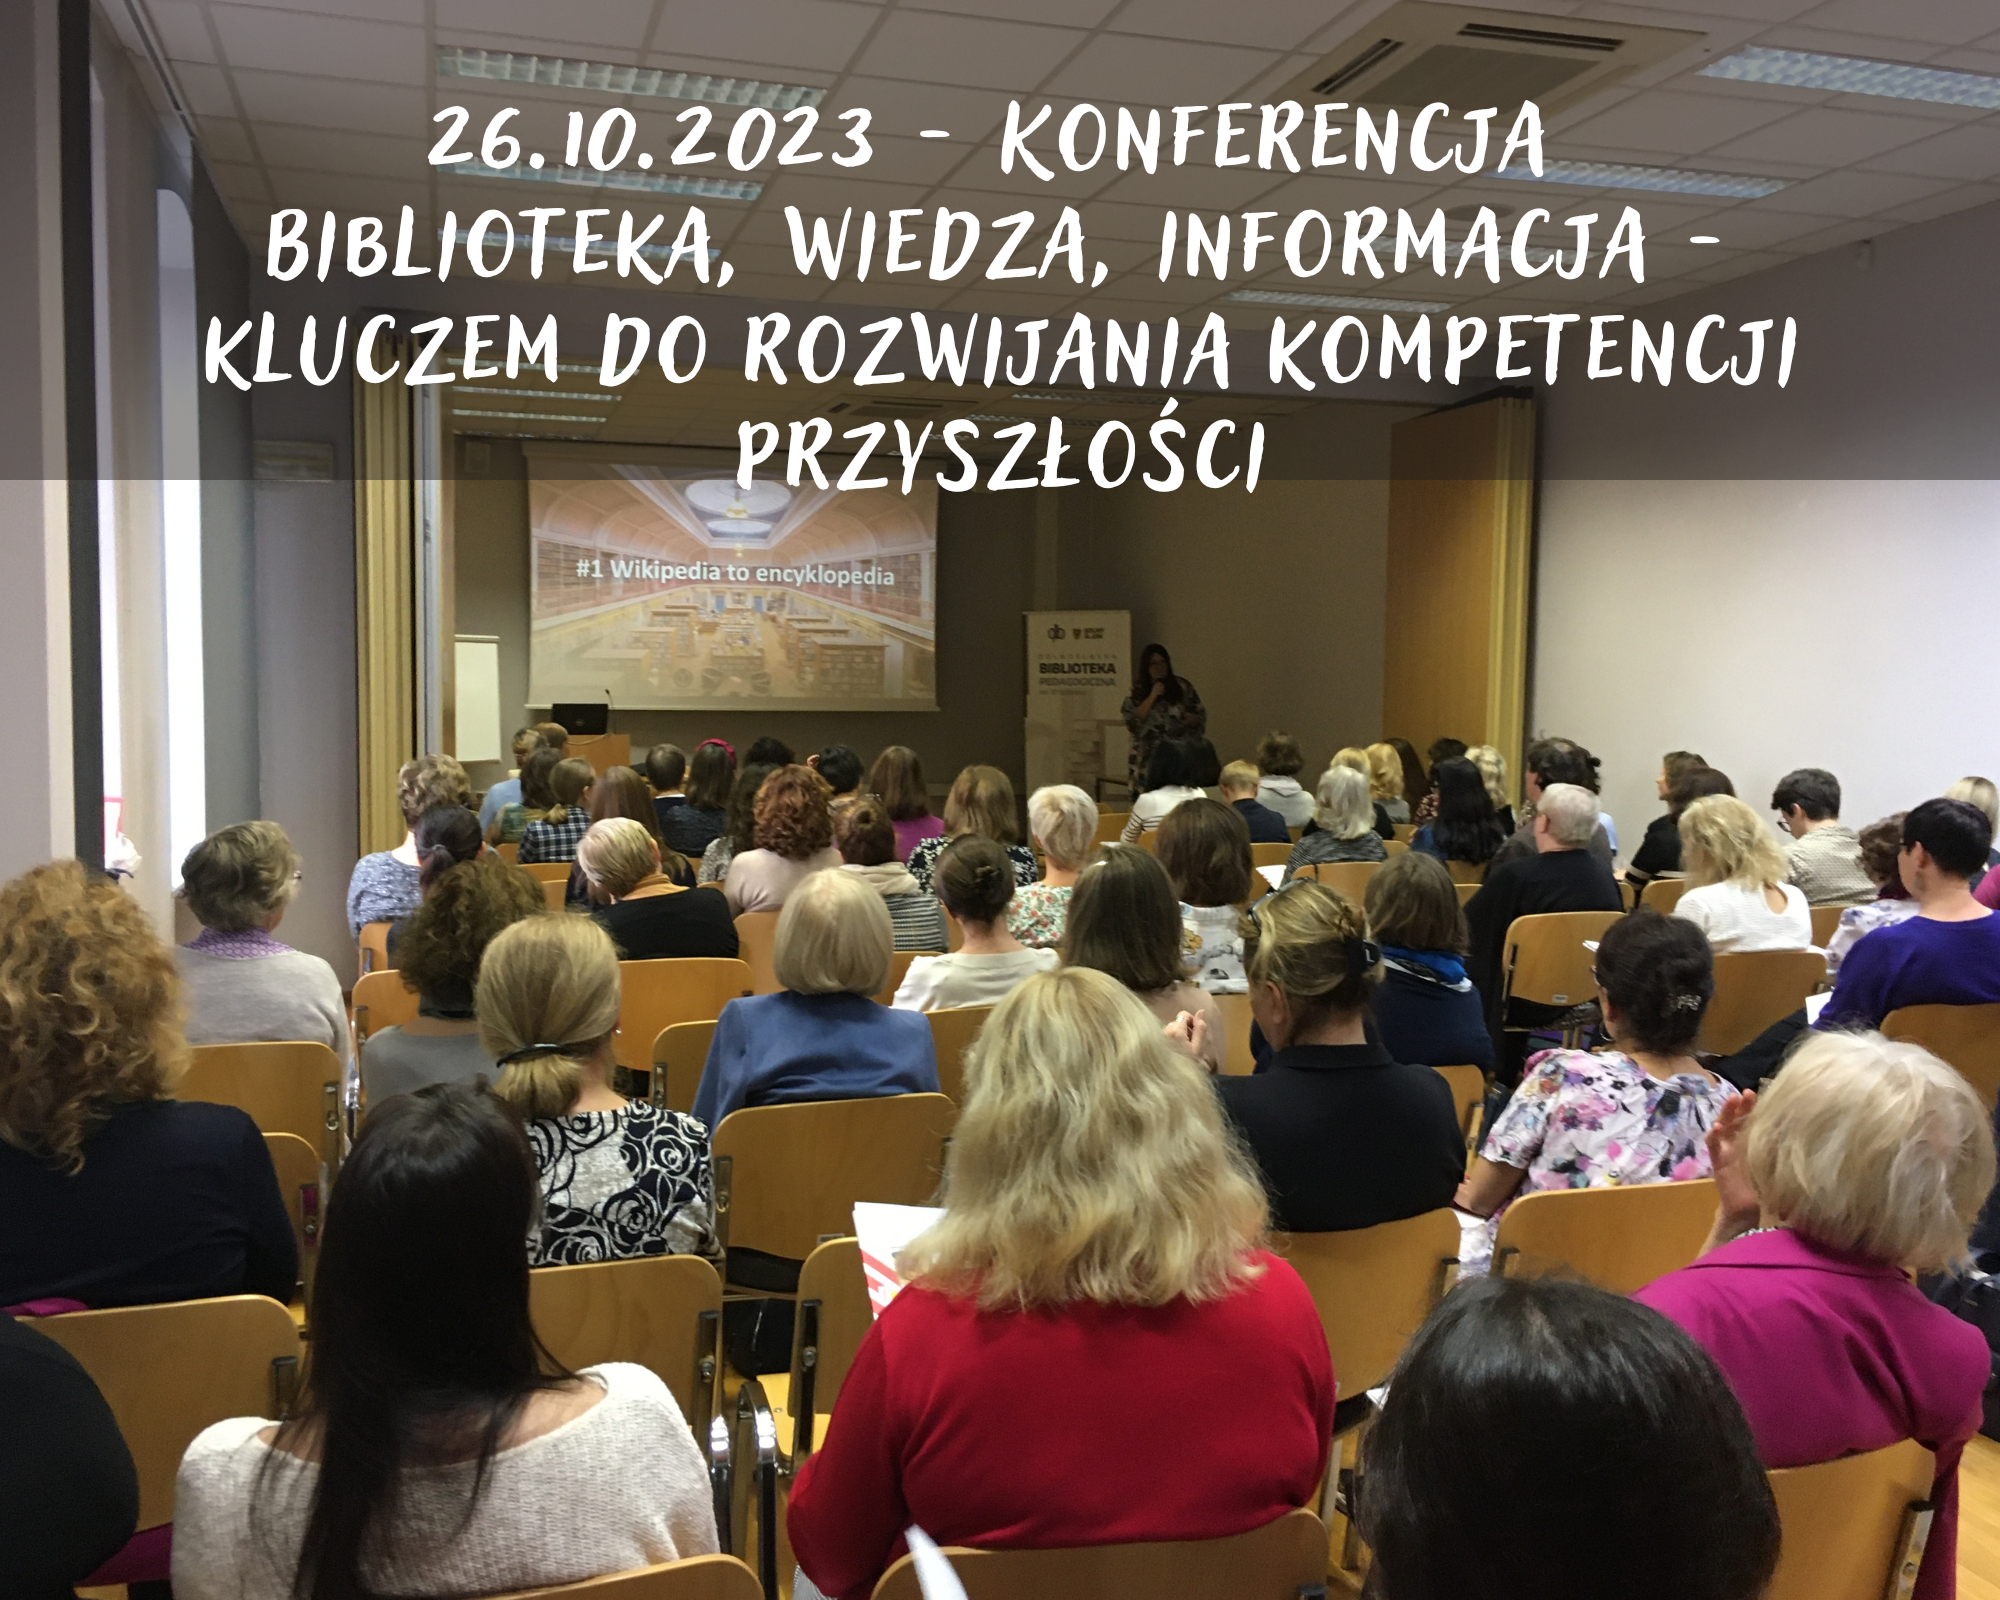 Konferencja: SCM - Biblioteka, wiedza, informacja kluczem do rozwijania kompetencji przyszłości